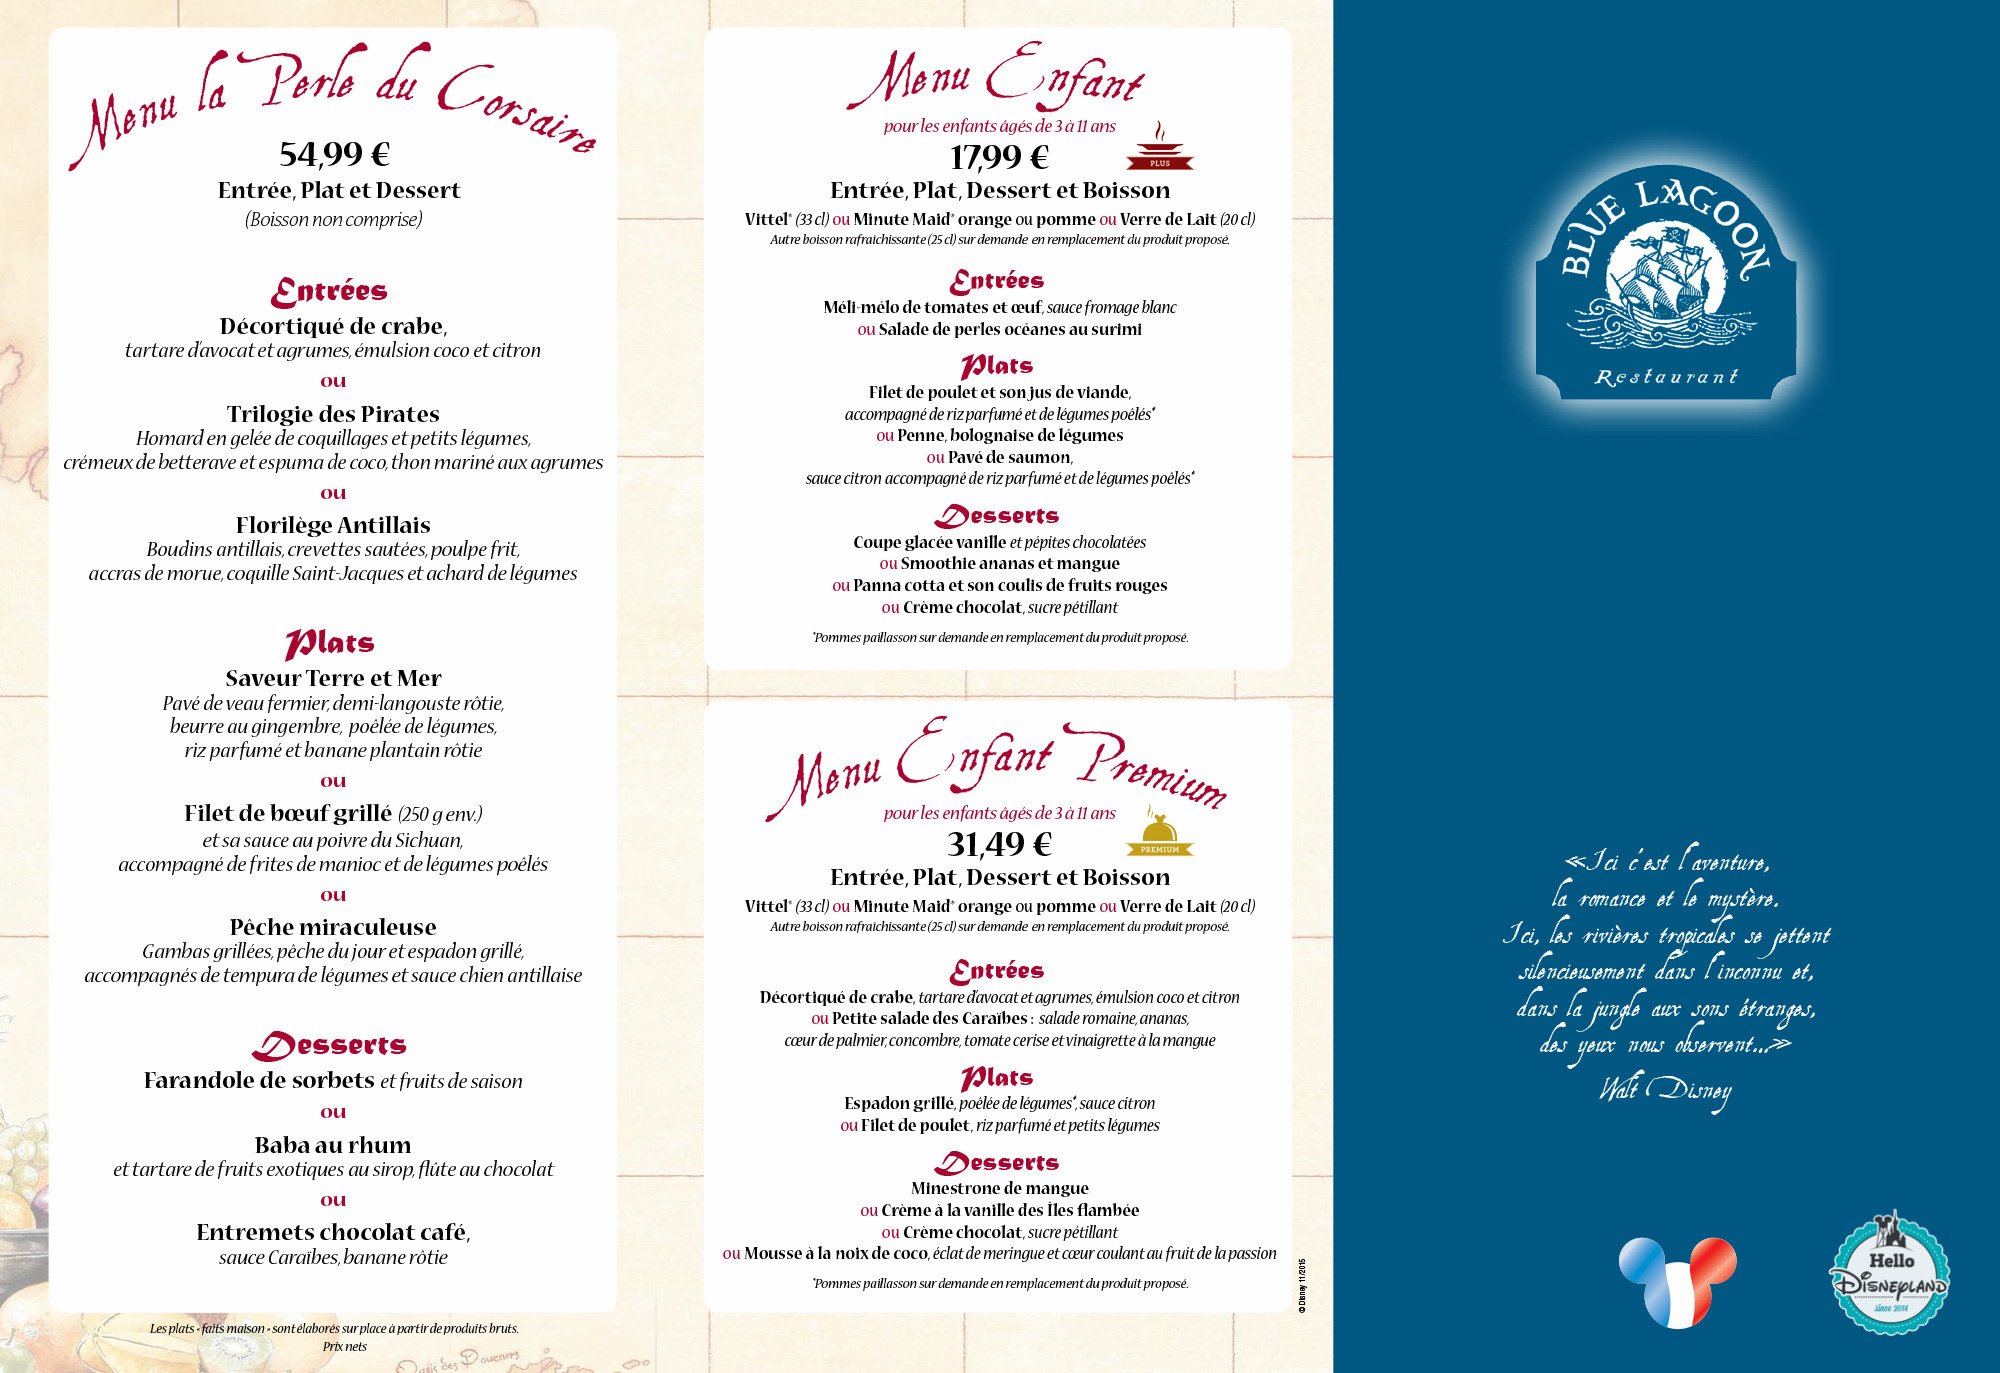 Blue lagoon restaurant menu 2015-2016 poirates des caraibes